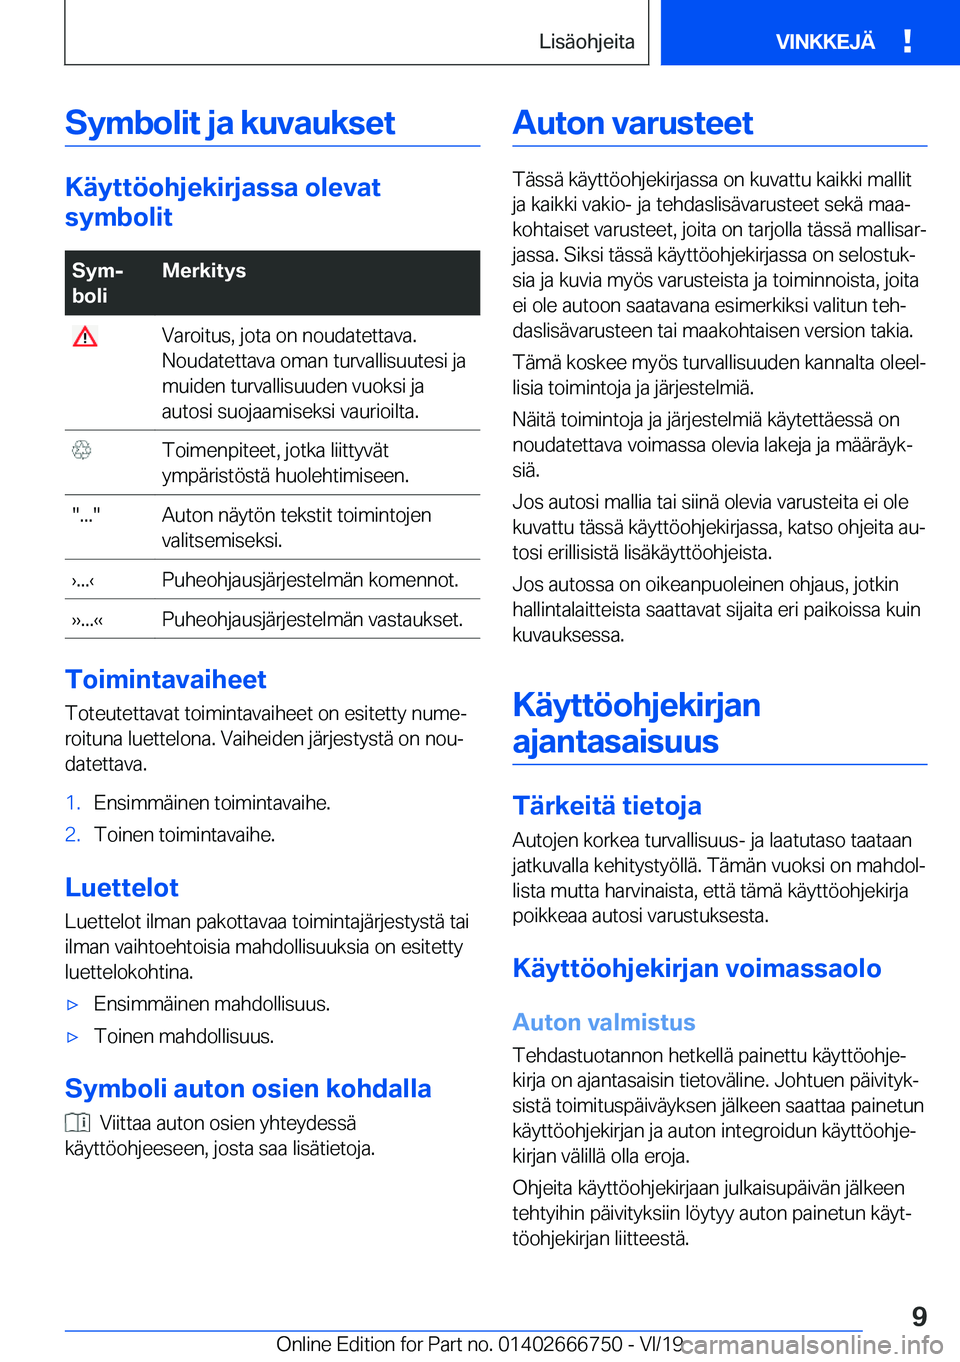 BMW M5 2020  Omistajan Käsikirja (in Finnish) �S�y�m�b�o�l�i�t��j�a��k�u�v�a�u�k�s�e�t
�K�